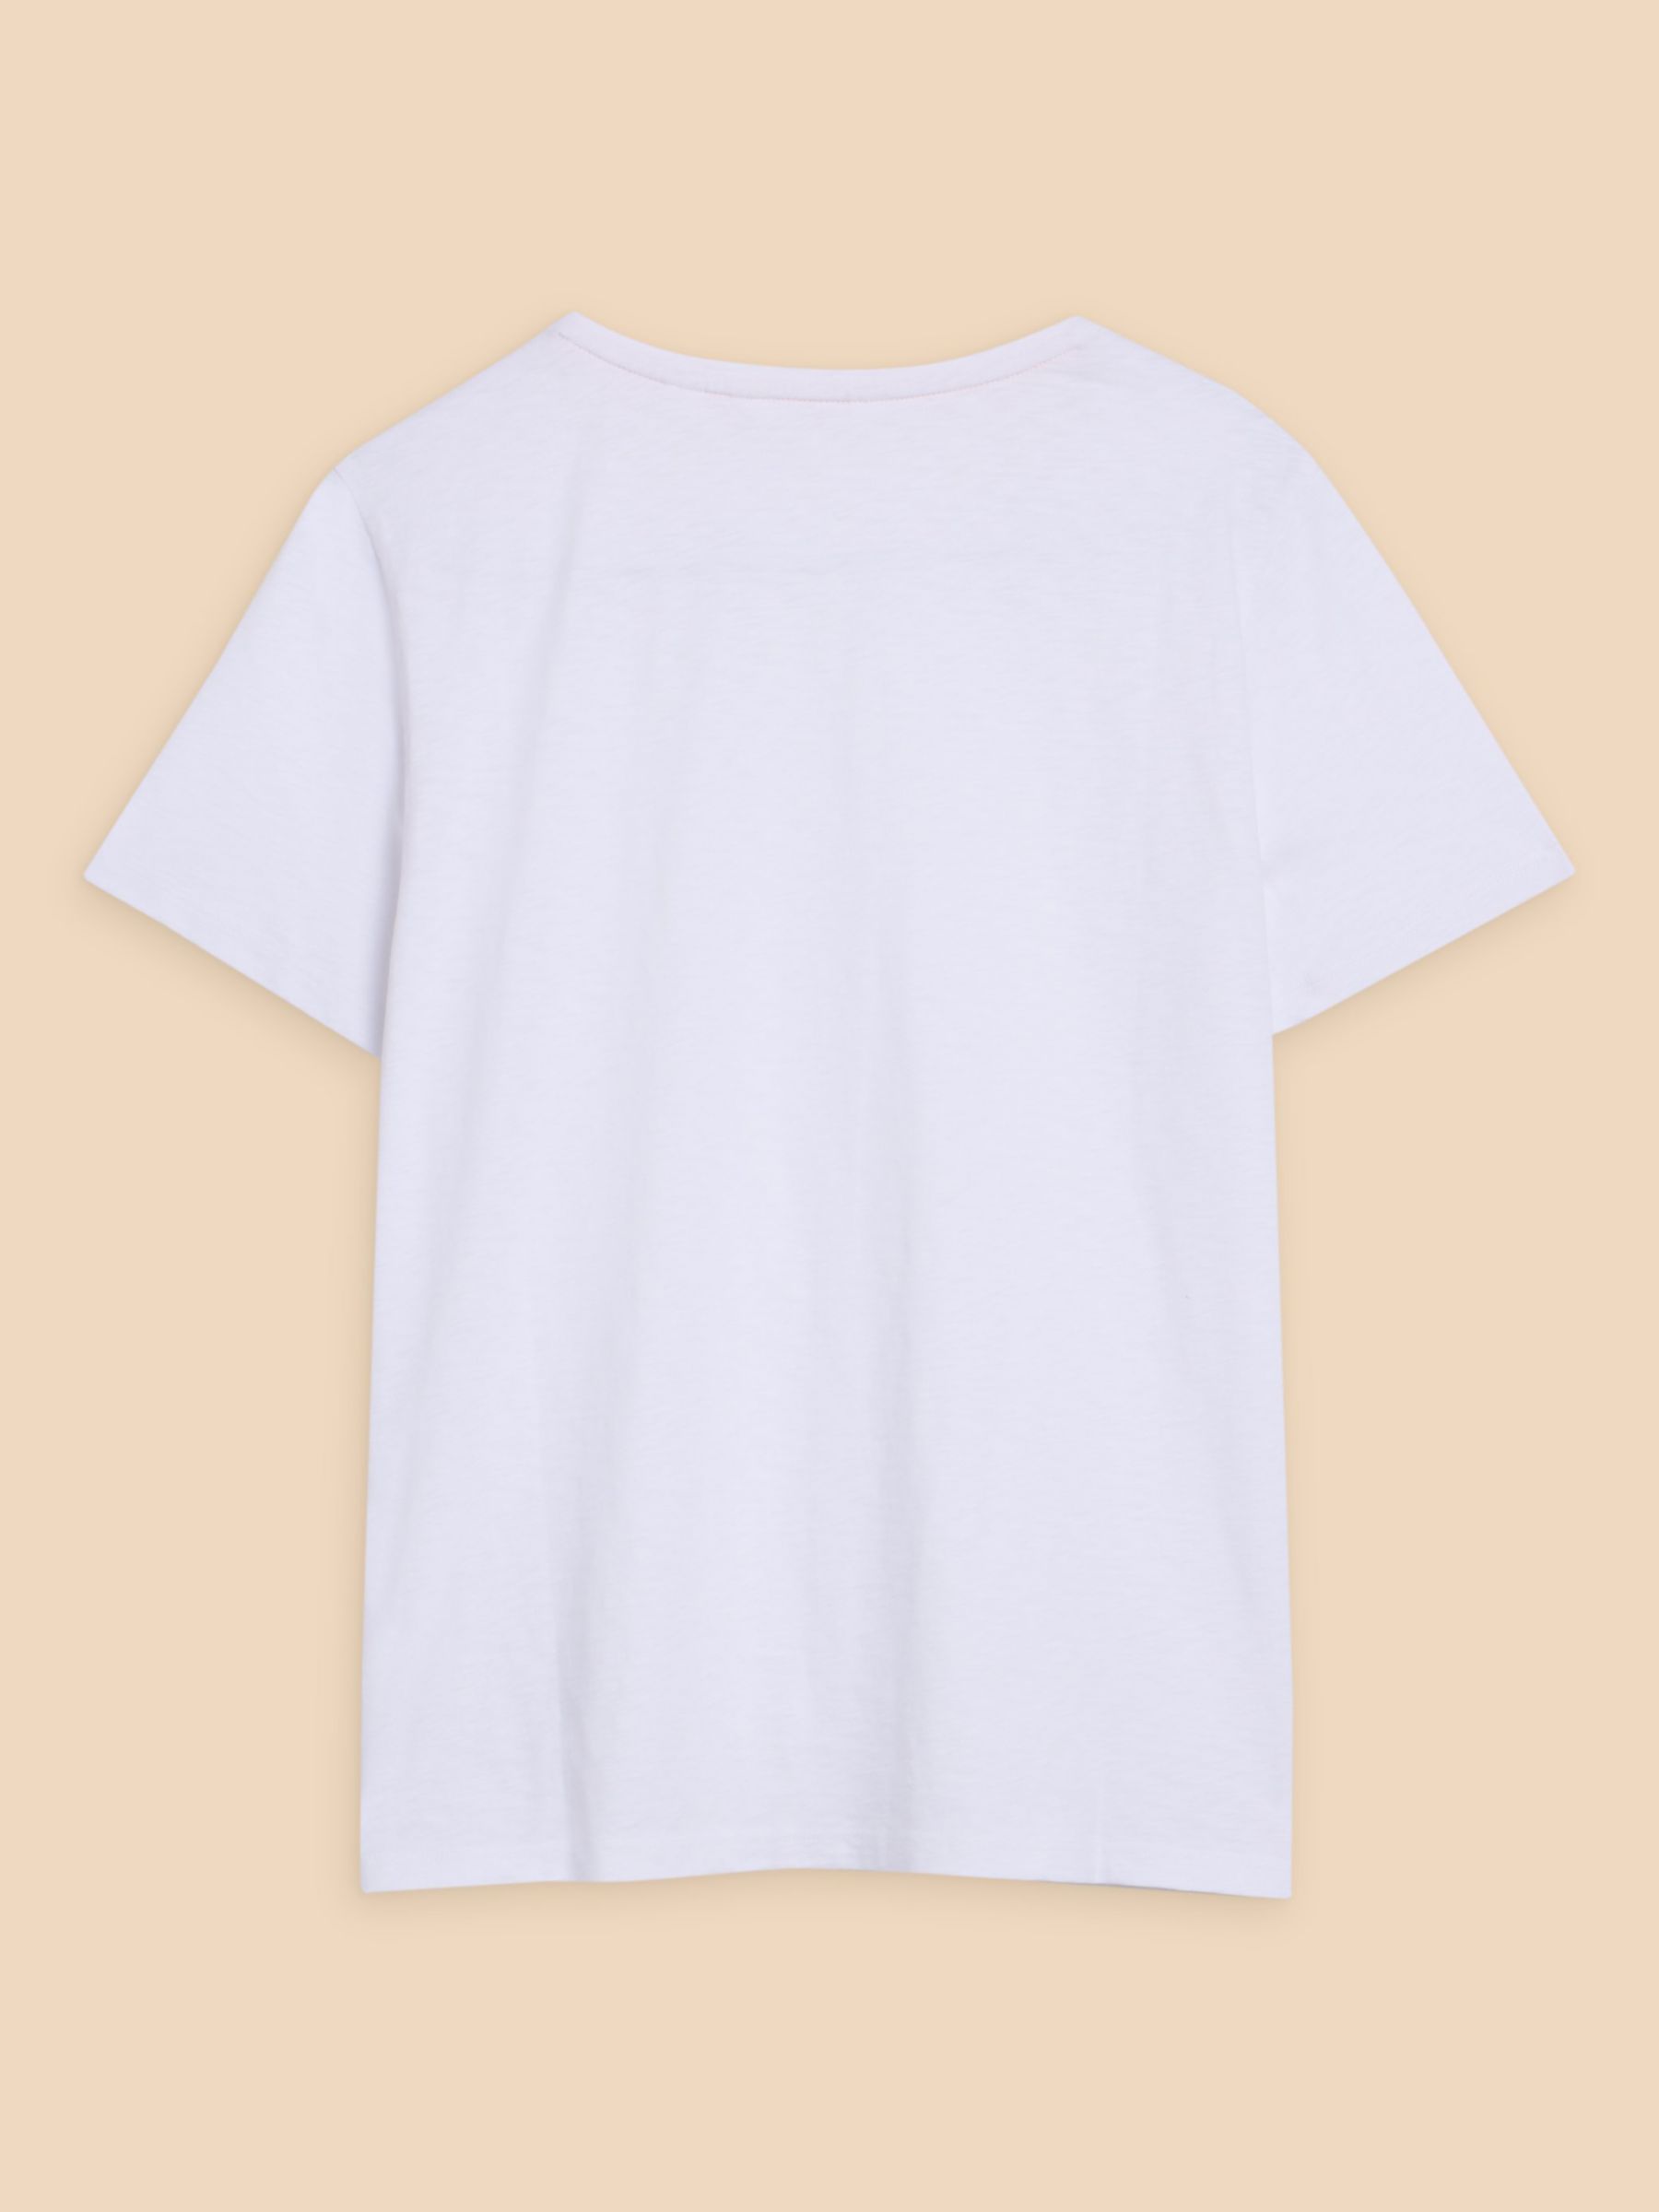 White Stuff Abbie Cotton T-Shirt, Brilliant White, 6